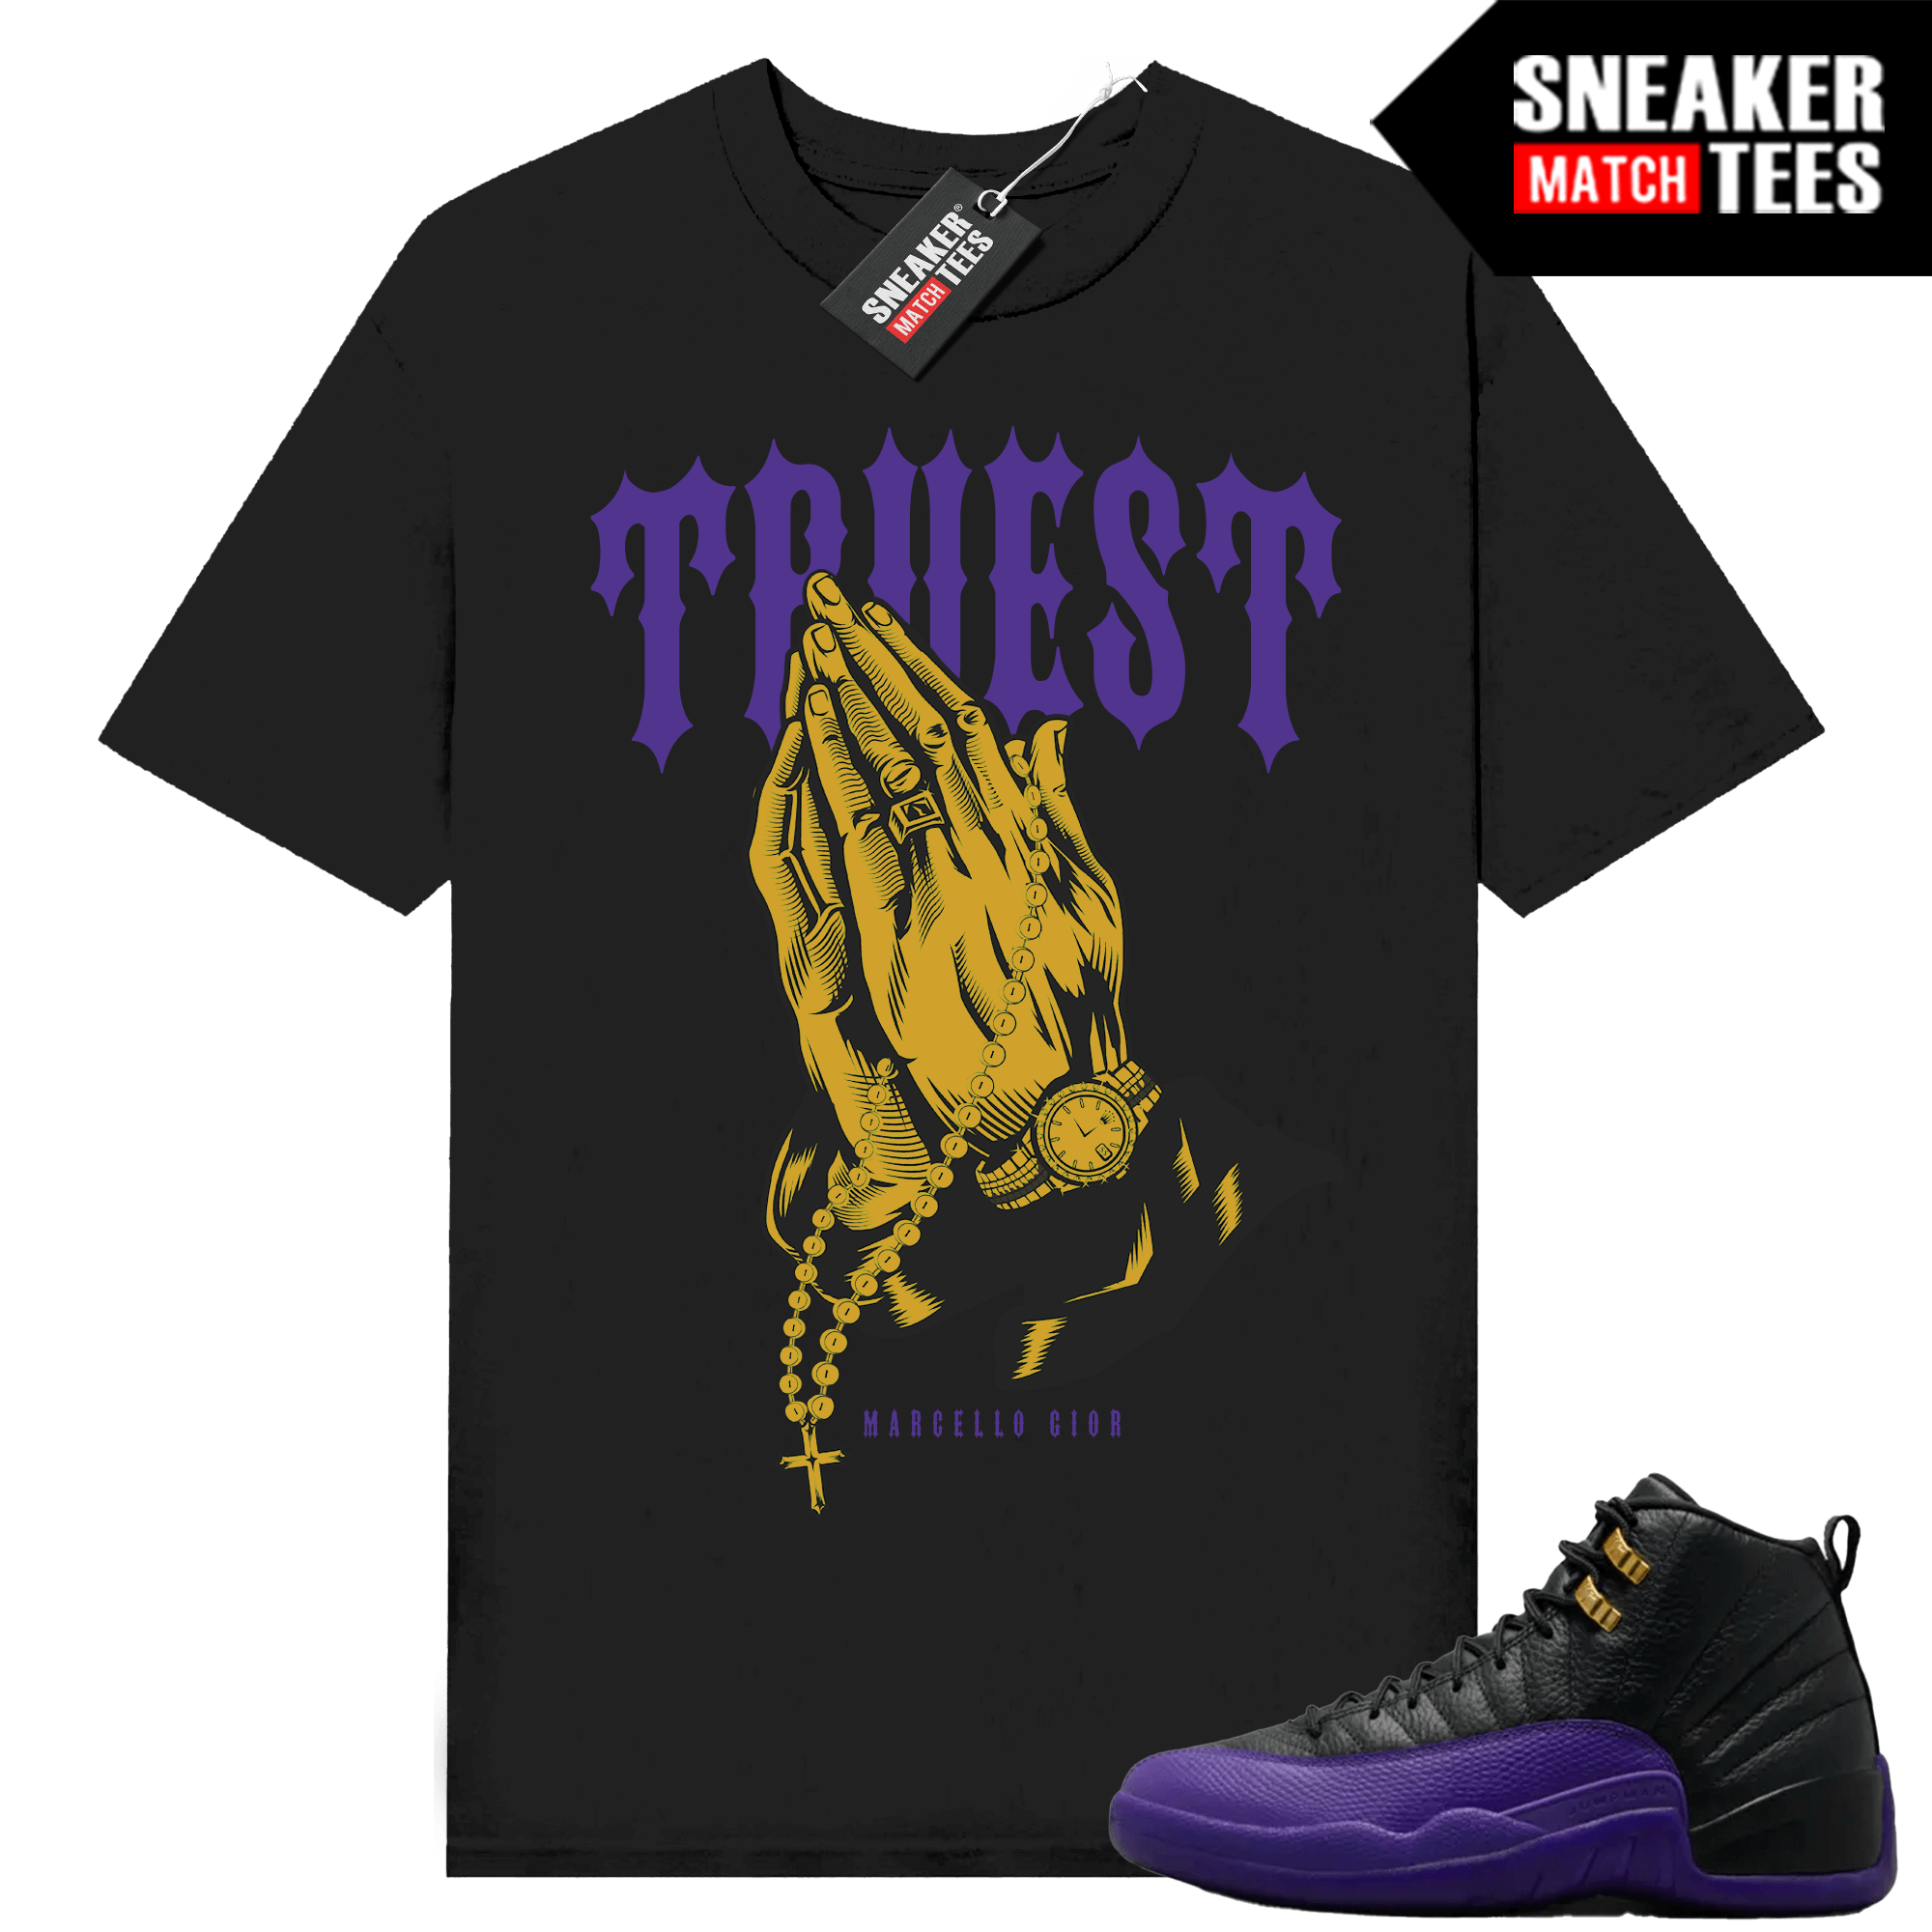 Jordan 12 Field Purple T-shirt Sneaker Match Black Gior Truest